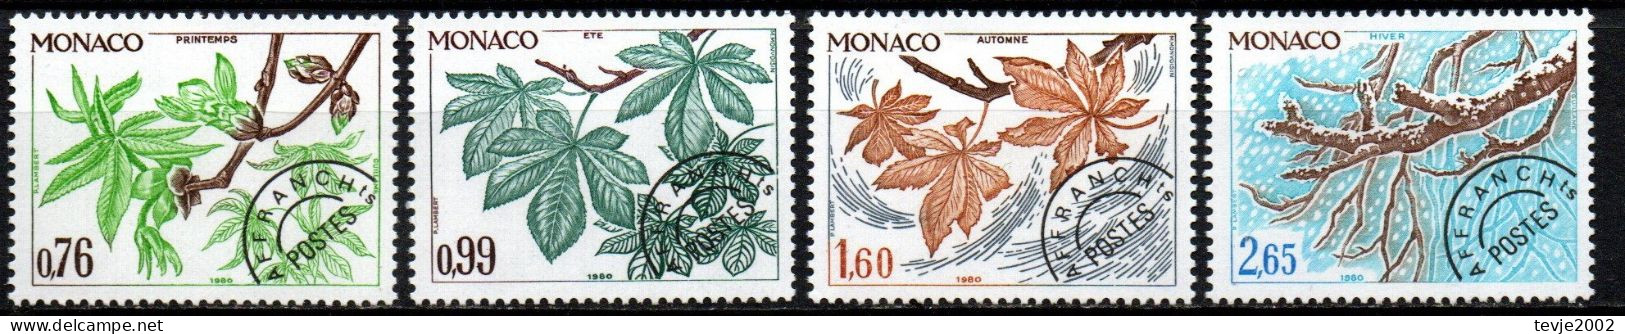 Monaco 1980 - Mi.Nr. 1410 - 1413 - Postfrisch MNH - Bäume Trees Kastanie - Bomen